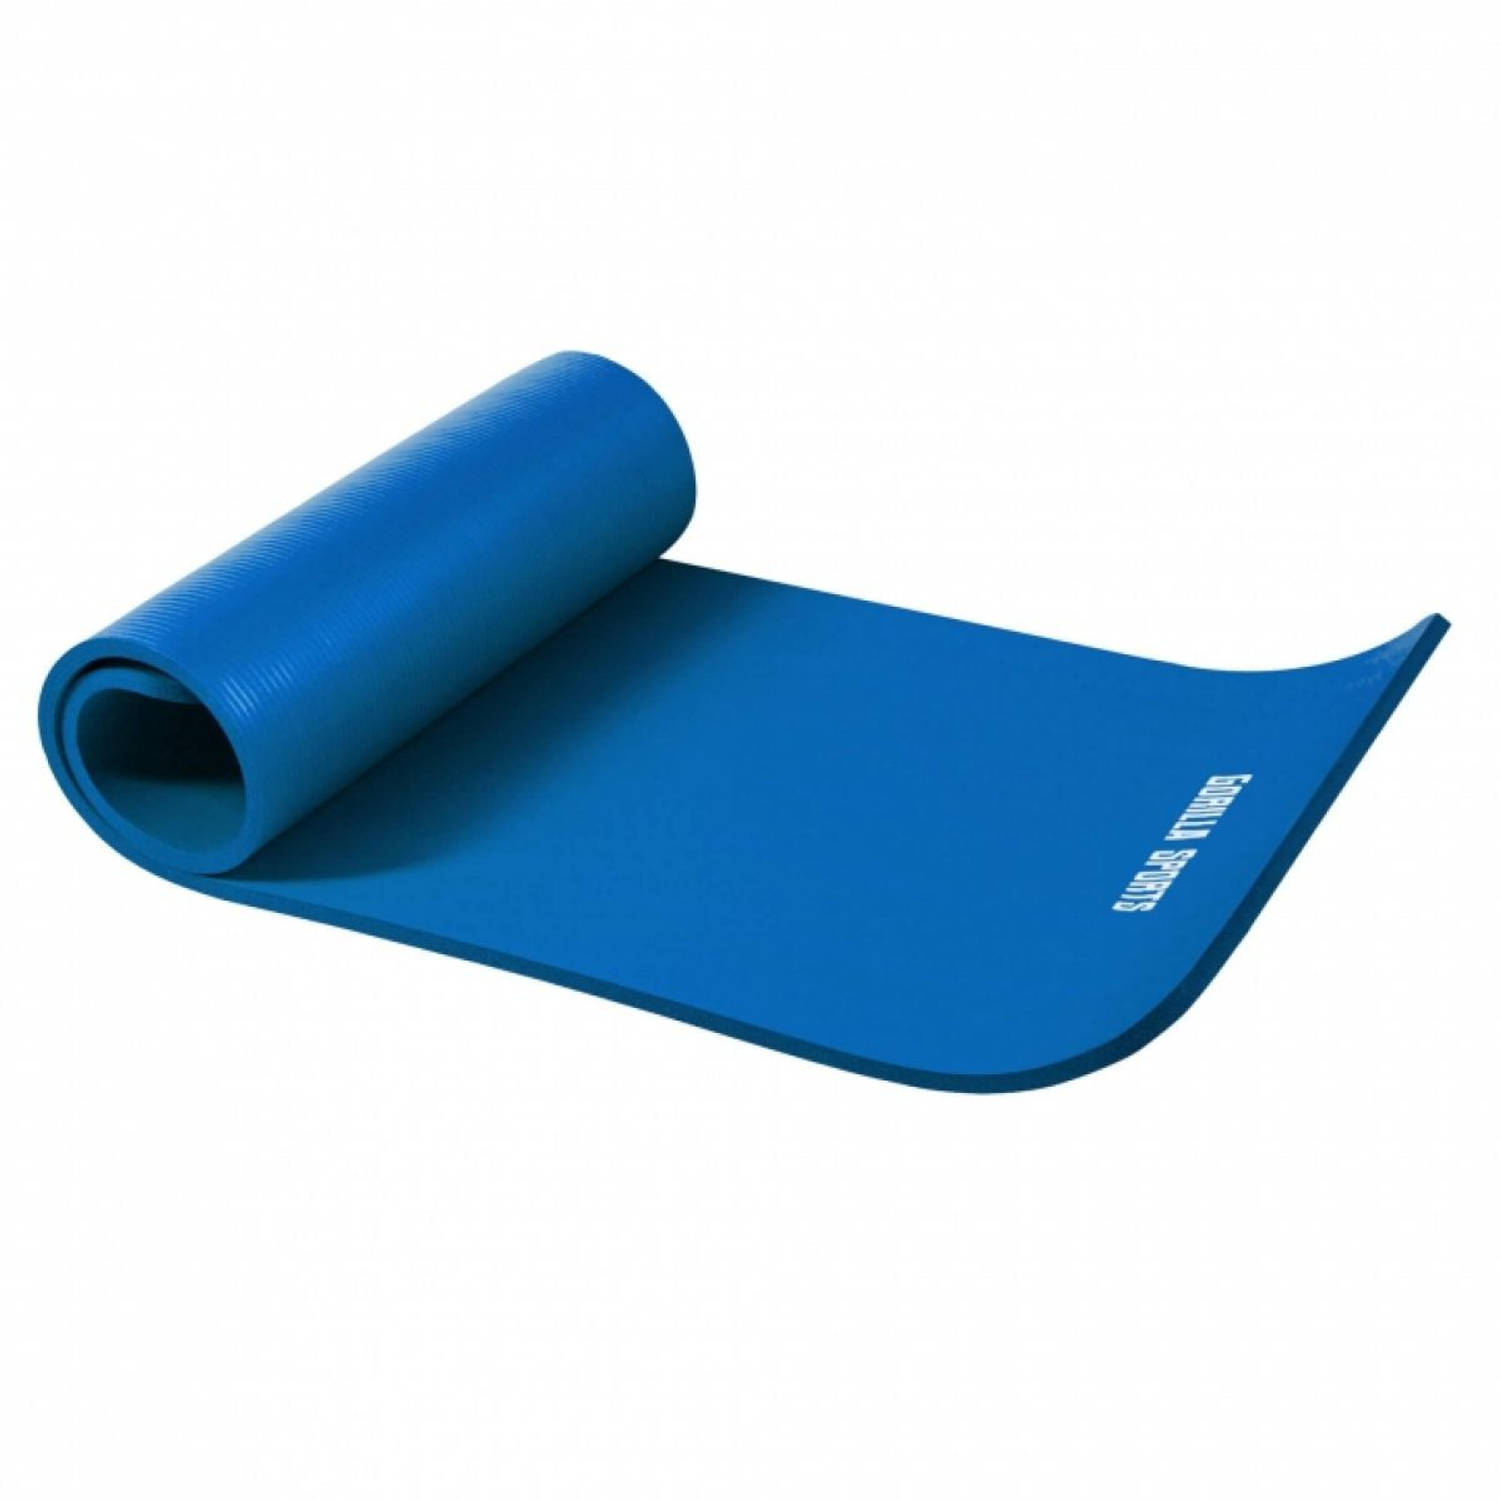 Yogamat Deluxe (190 x 100 x 1,5 cm) royal blue